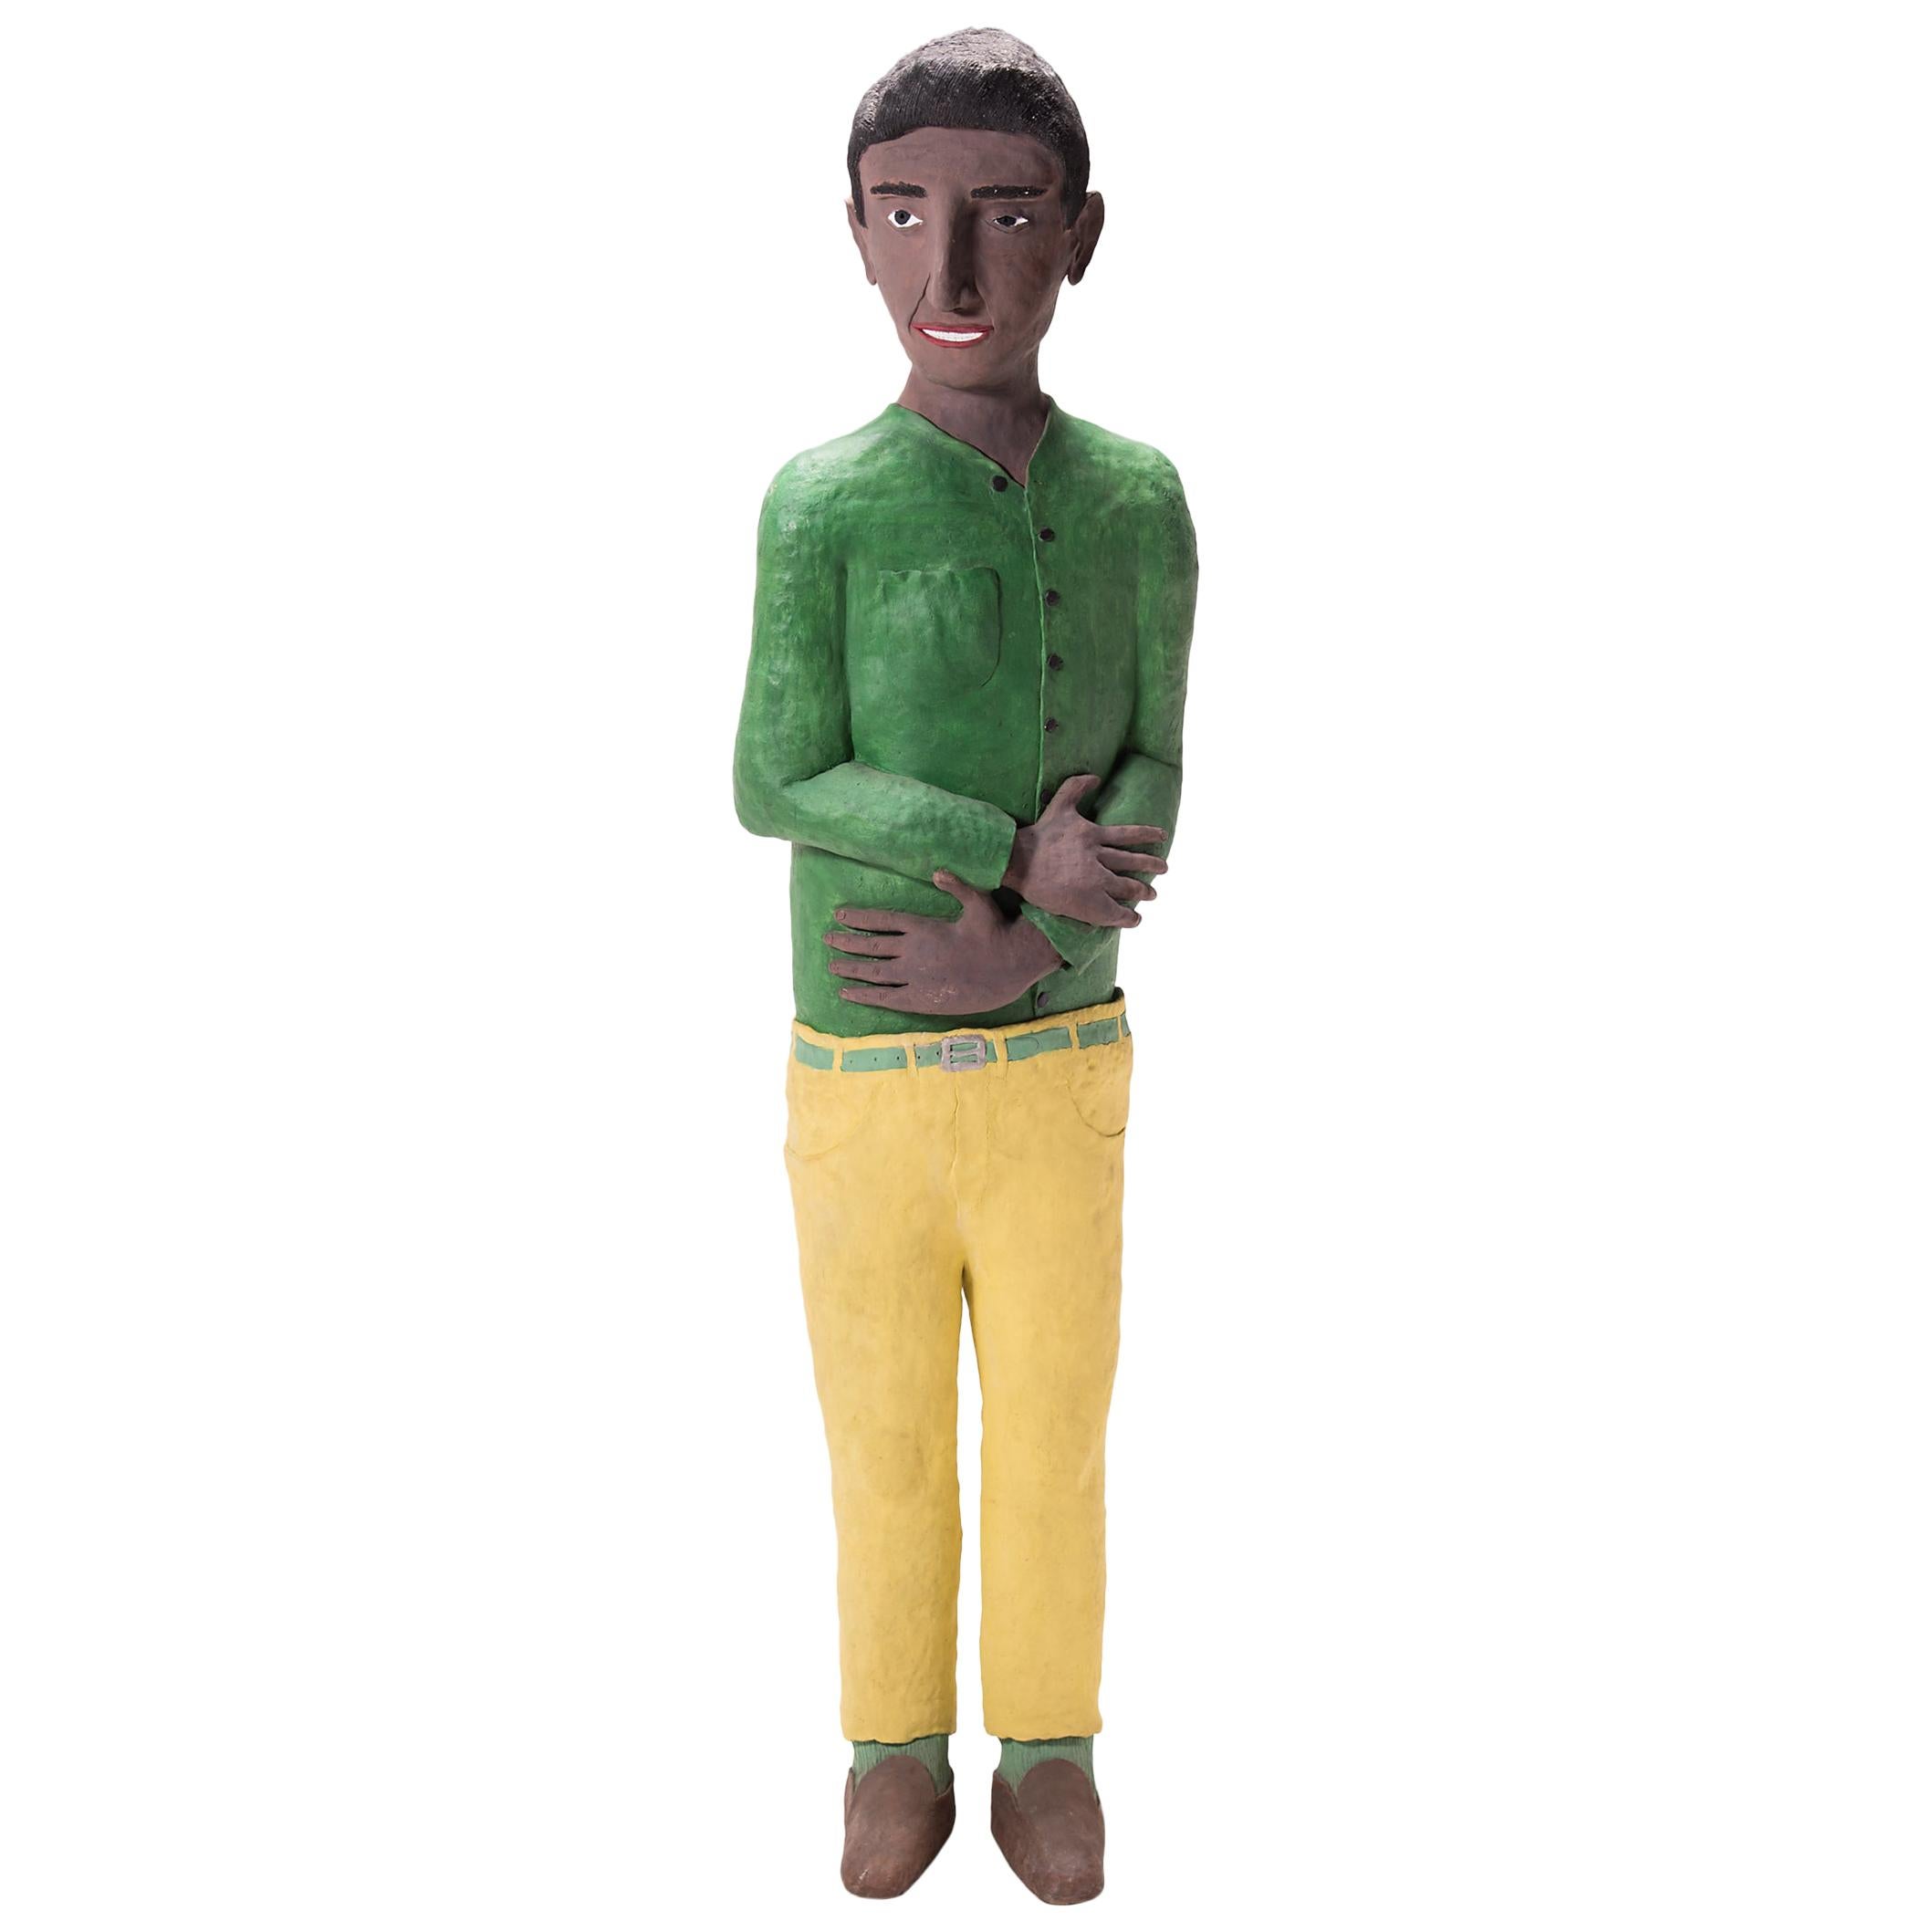 "Man in Green Shirt" by Allan Winkler For Sale